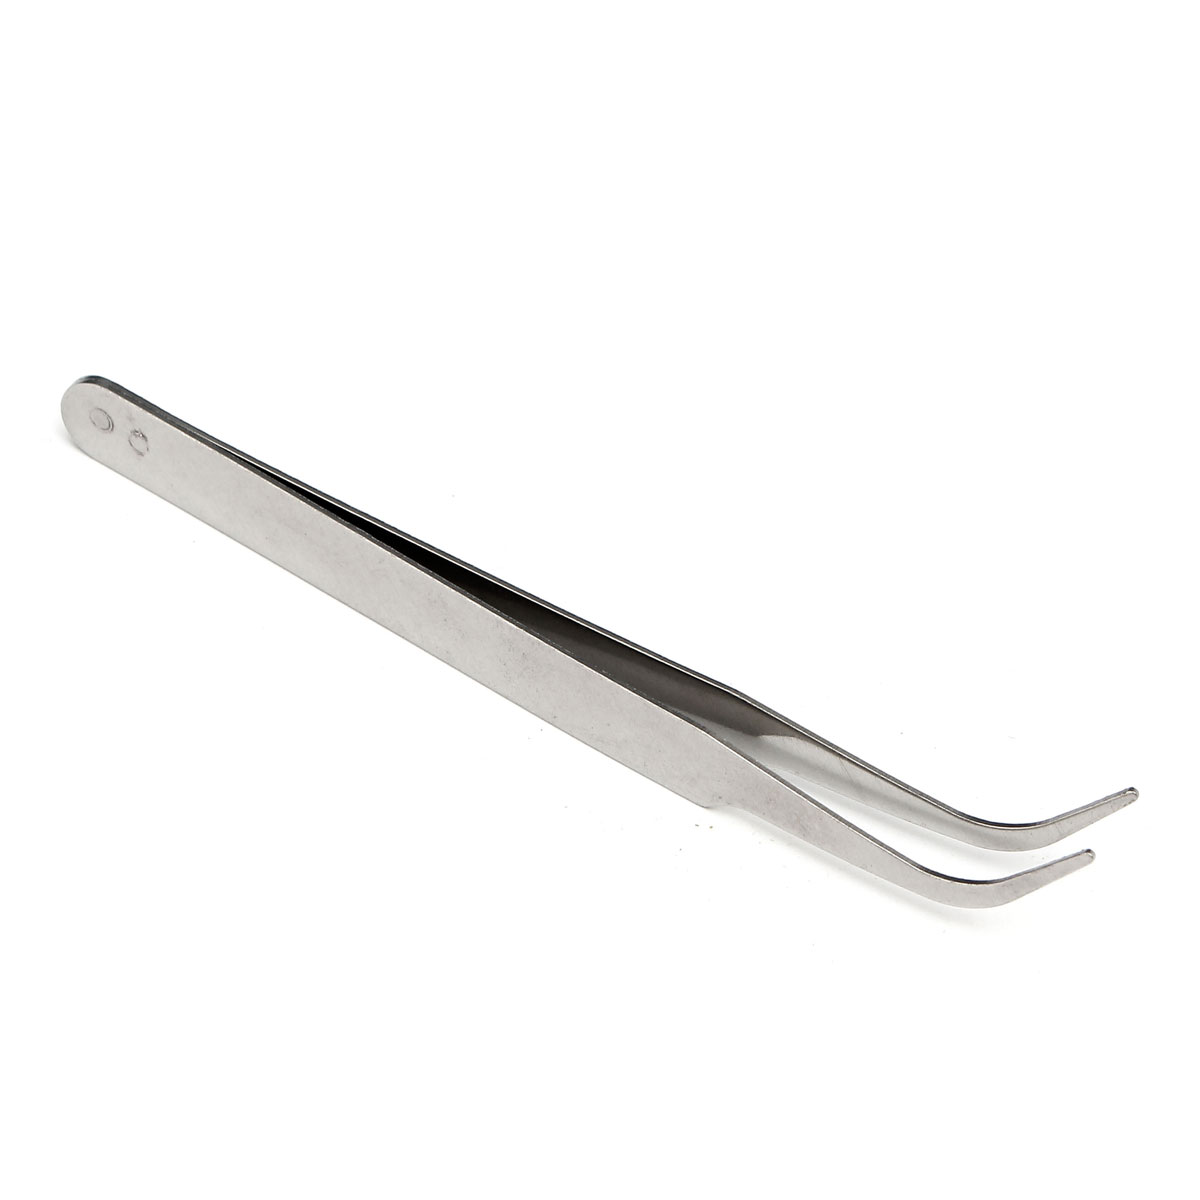 100mm-Stainless-Steel-High-Precision-Elbow-Tweezers-DIY-Tool-1096797-5